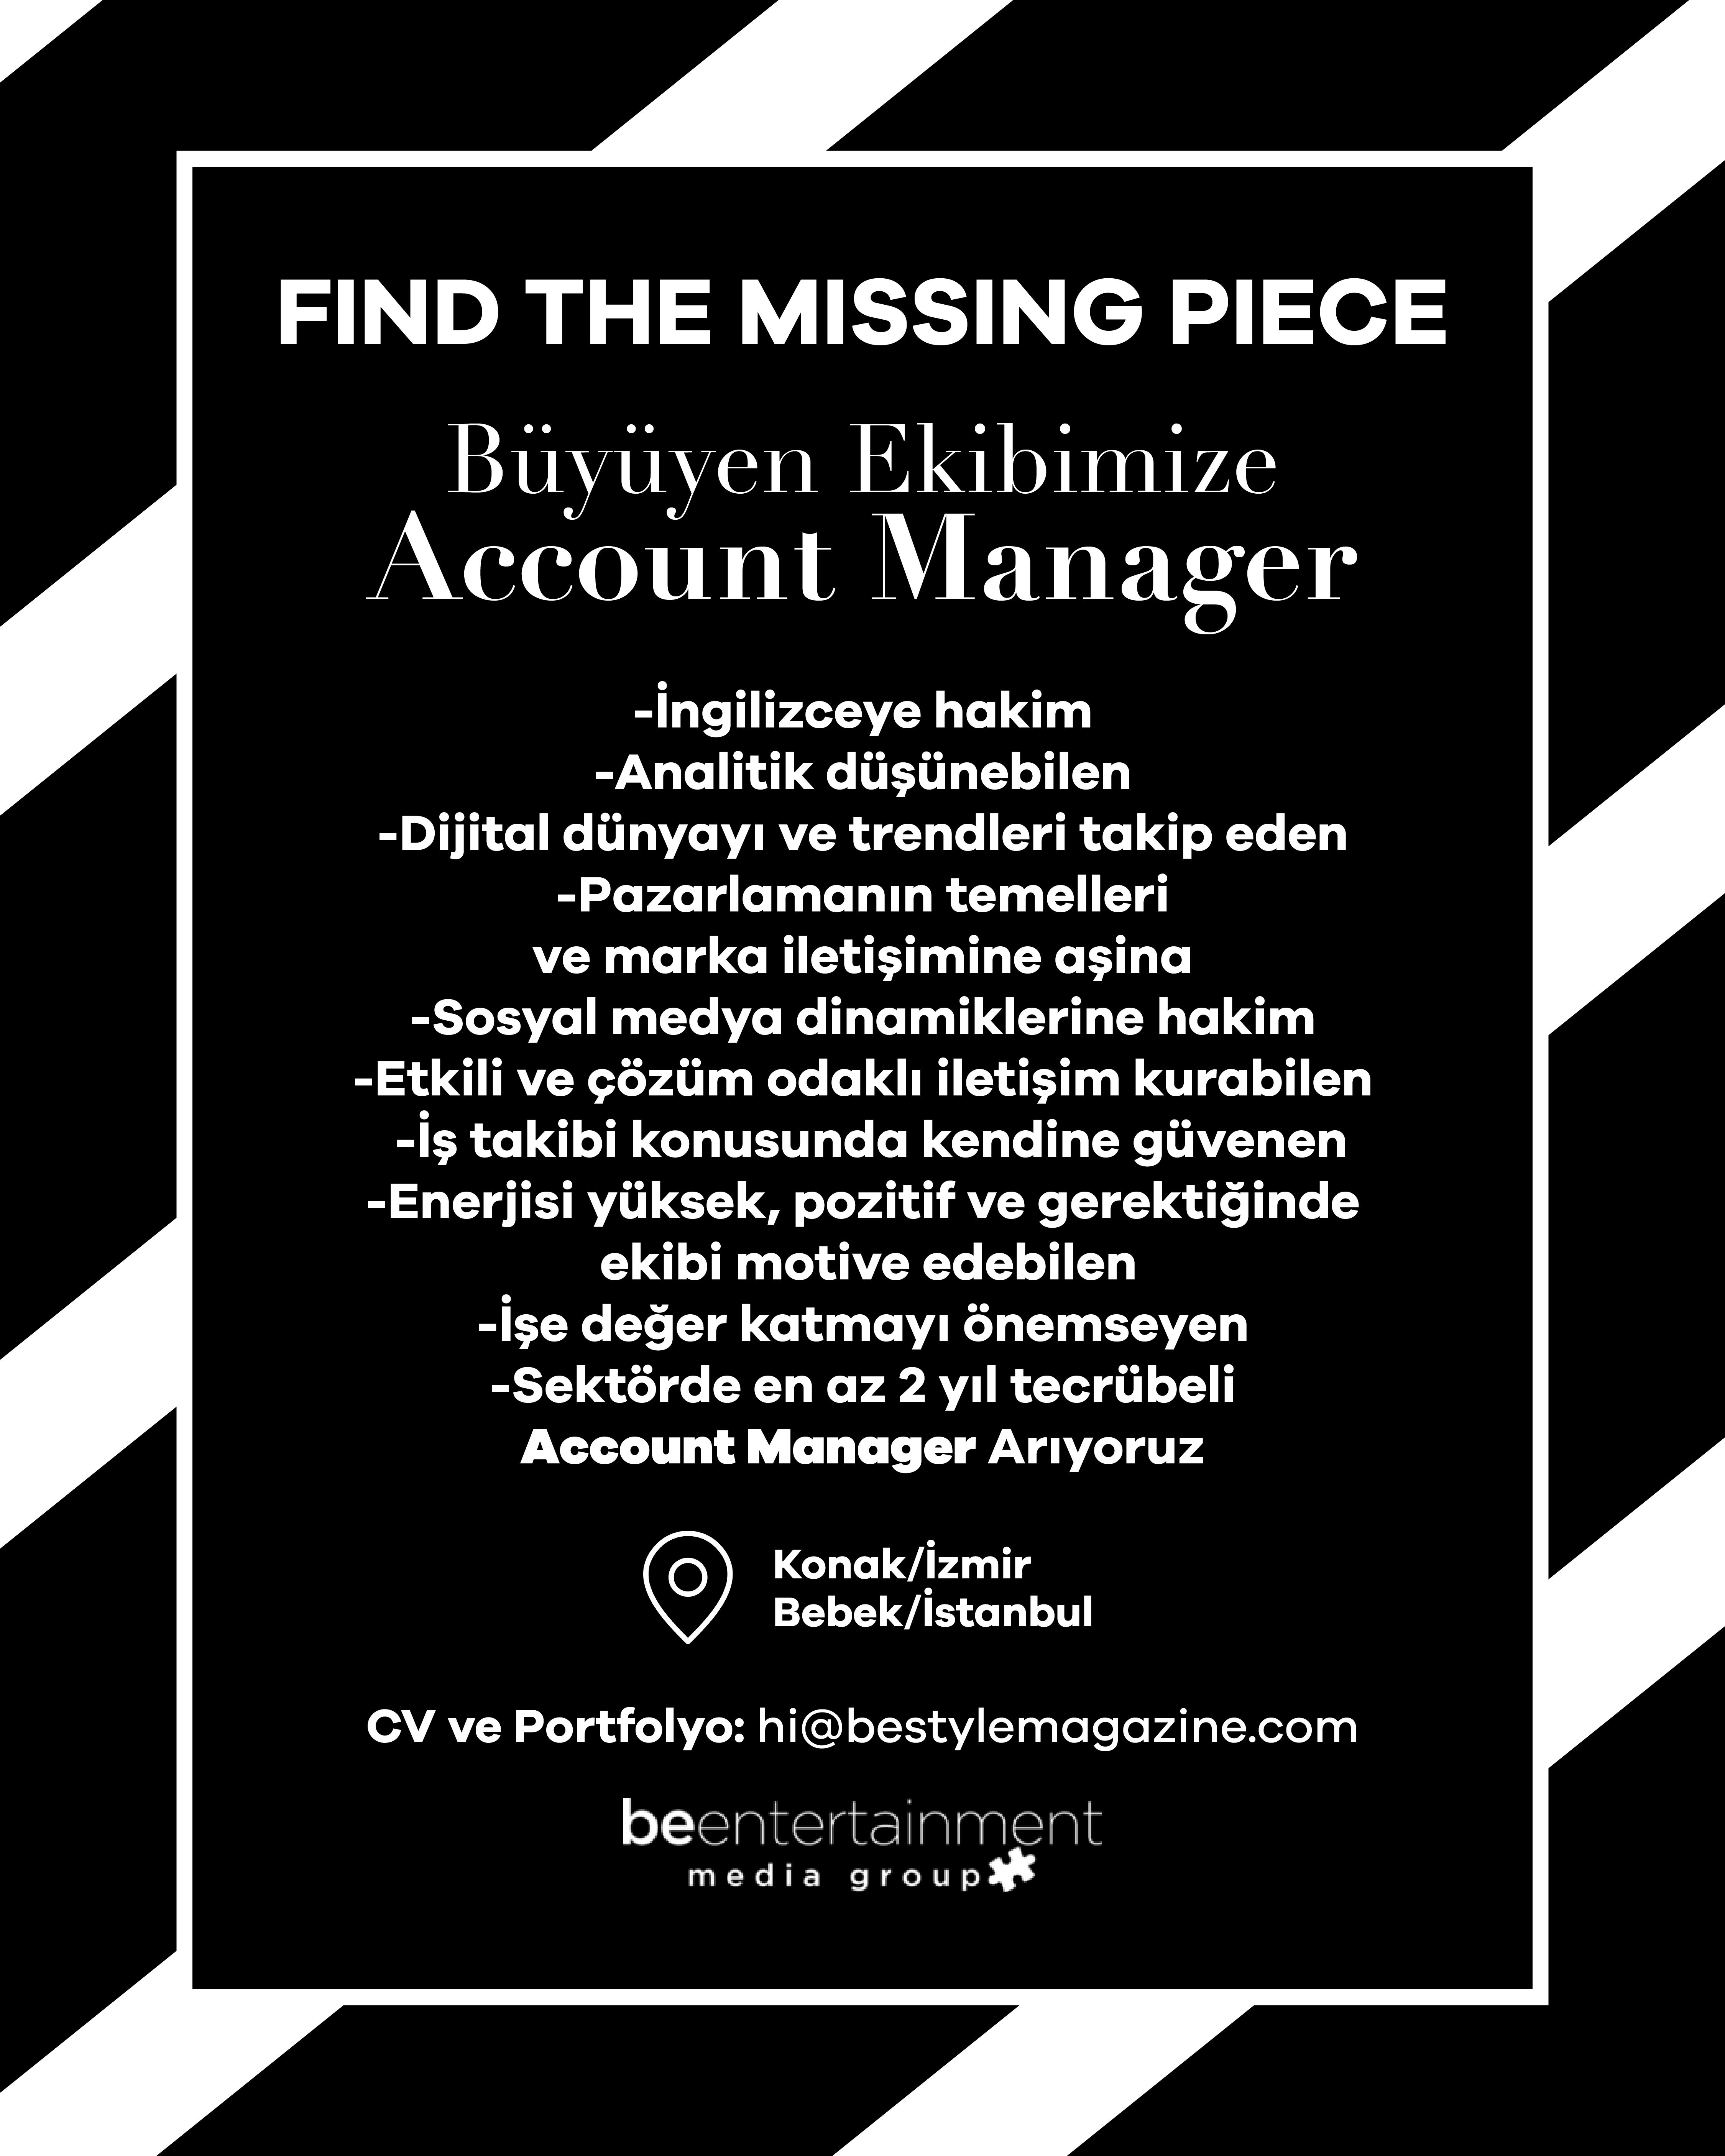 Büyüyen Ekibimize Account Manager arıyoruz!